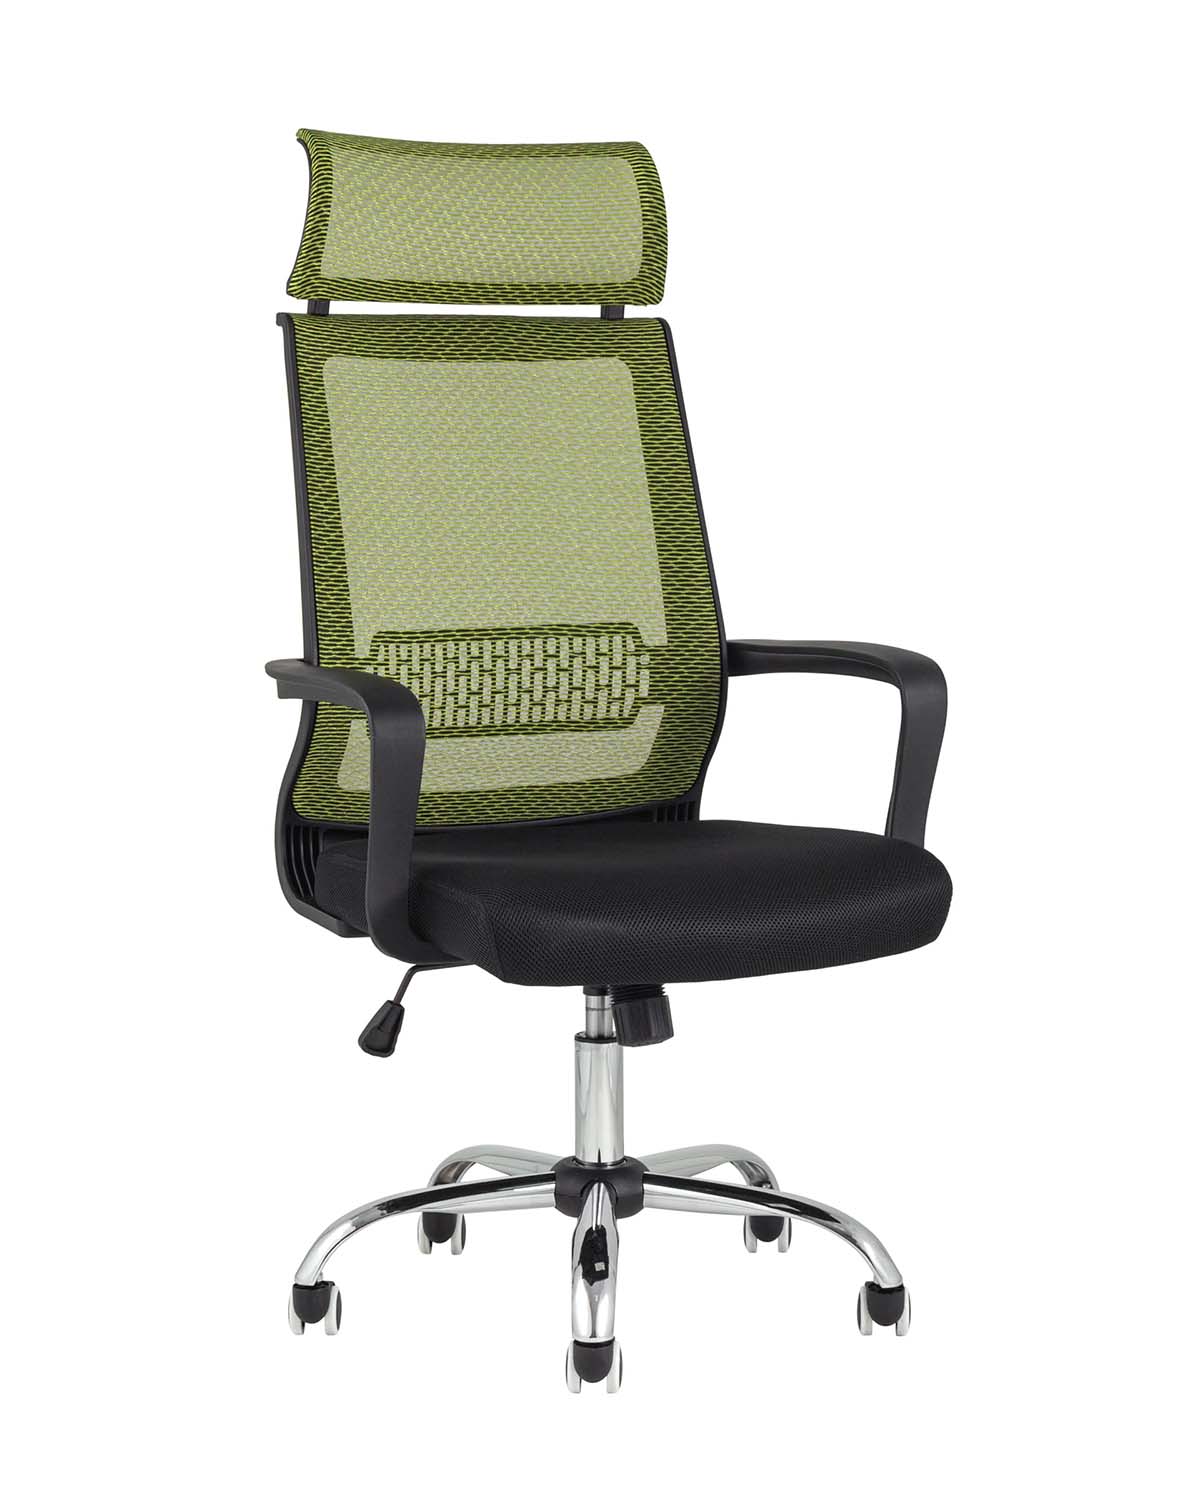 Компьютерное кресло TopChairs Style офисное зеленое в обивке с сеткой, регулировка по высоте и механизм качания Top